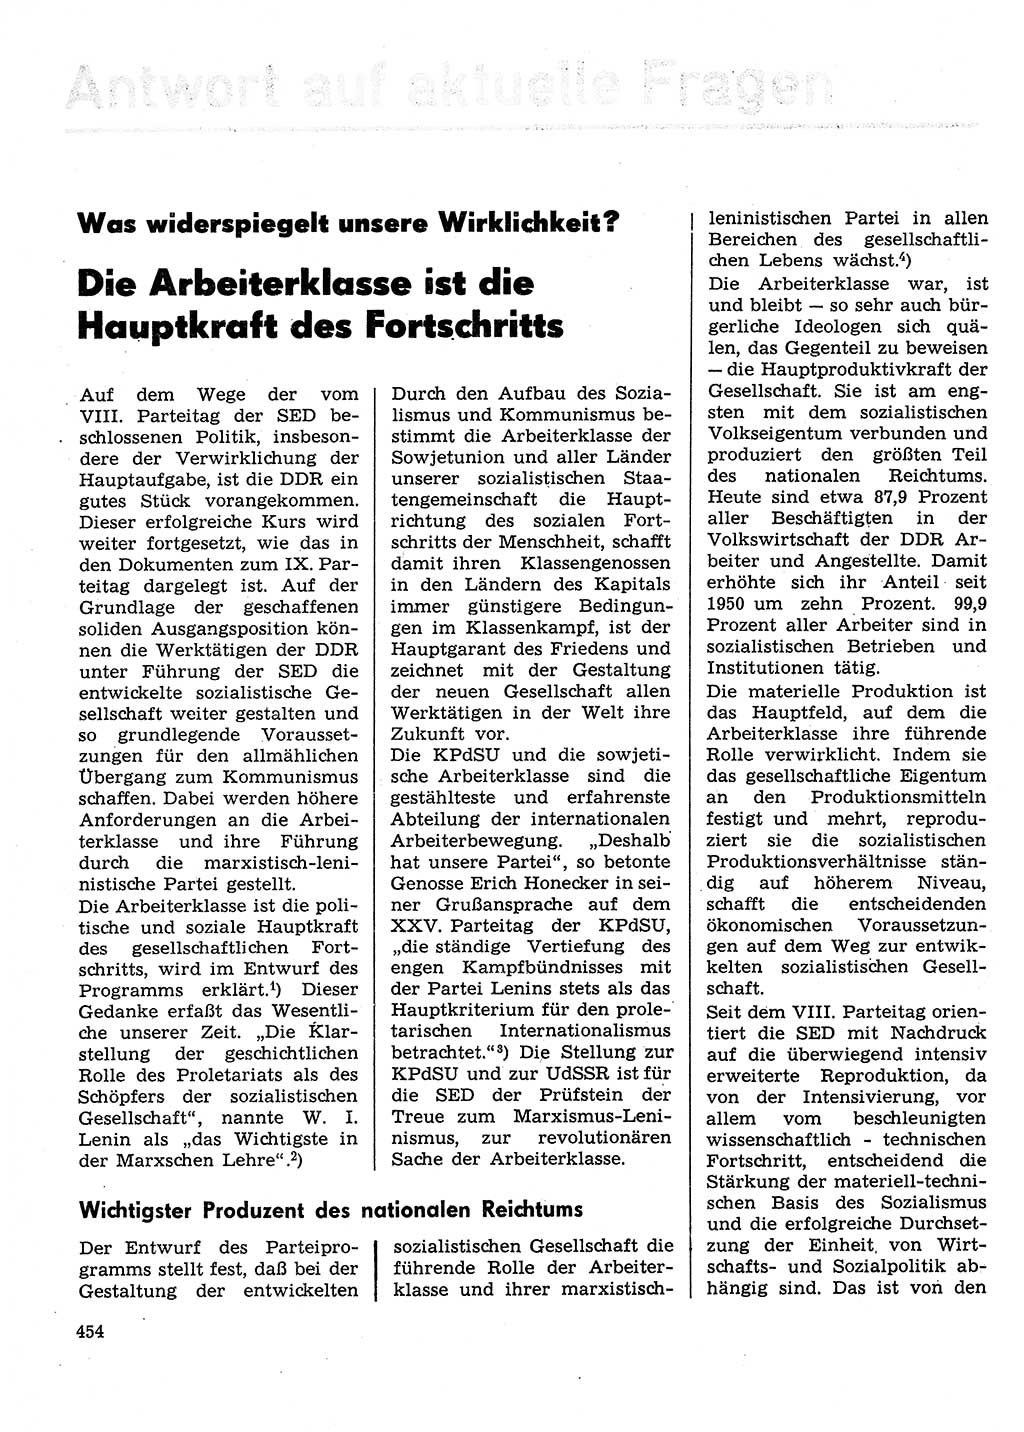 Neuer Weg (NW), Organ des Zentralkomitees (ZK) der SED (Sozialistische Einheitspartei Deutschlands) für Fragen des Parteilebens, 31. Jahrgang [Deutsche Demokratische Republik (DDR)] 1976, Seite 454 (NW ZK SED DDR 1976, S. 454)